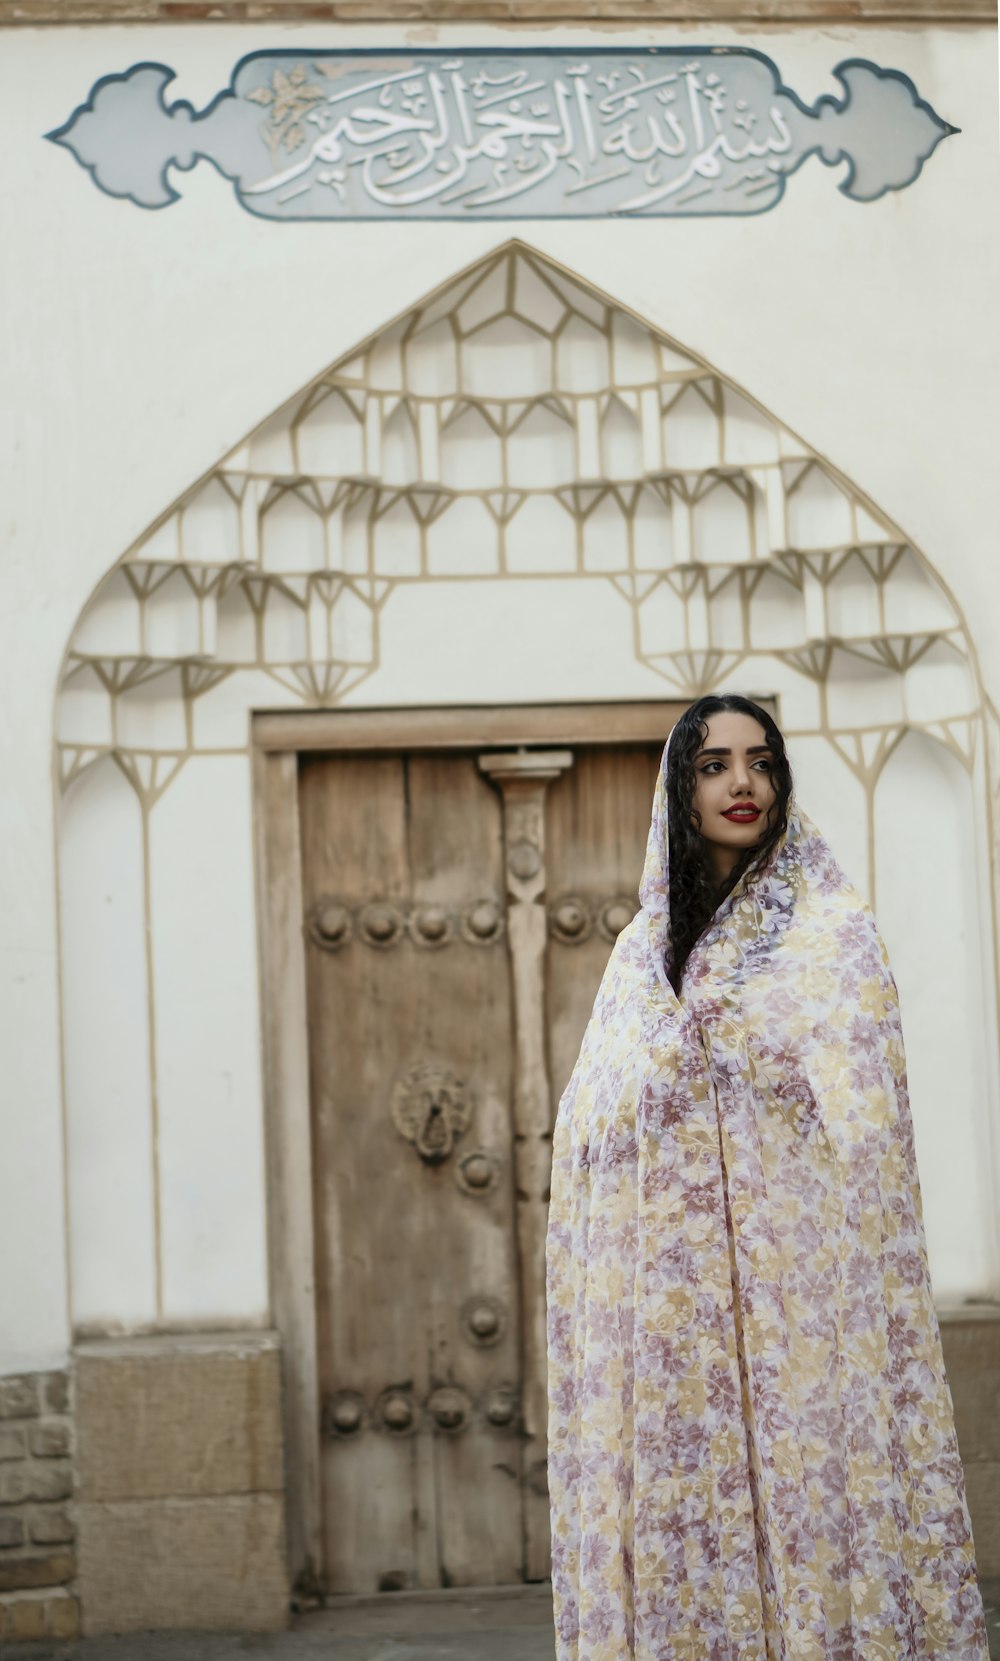 Frau in weißem und lila geblümtem Hijab in der Nähe einer braunen Holztür